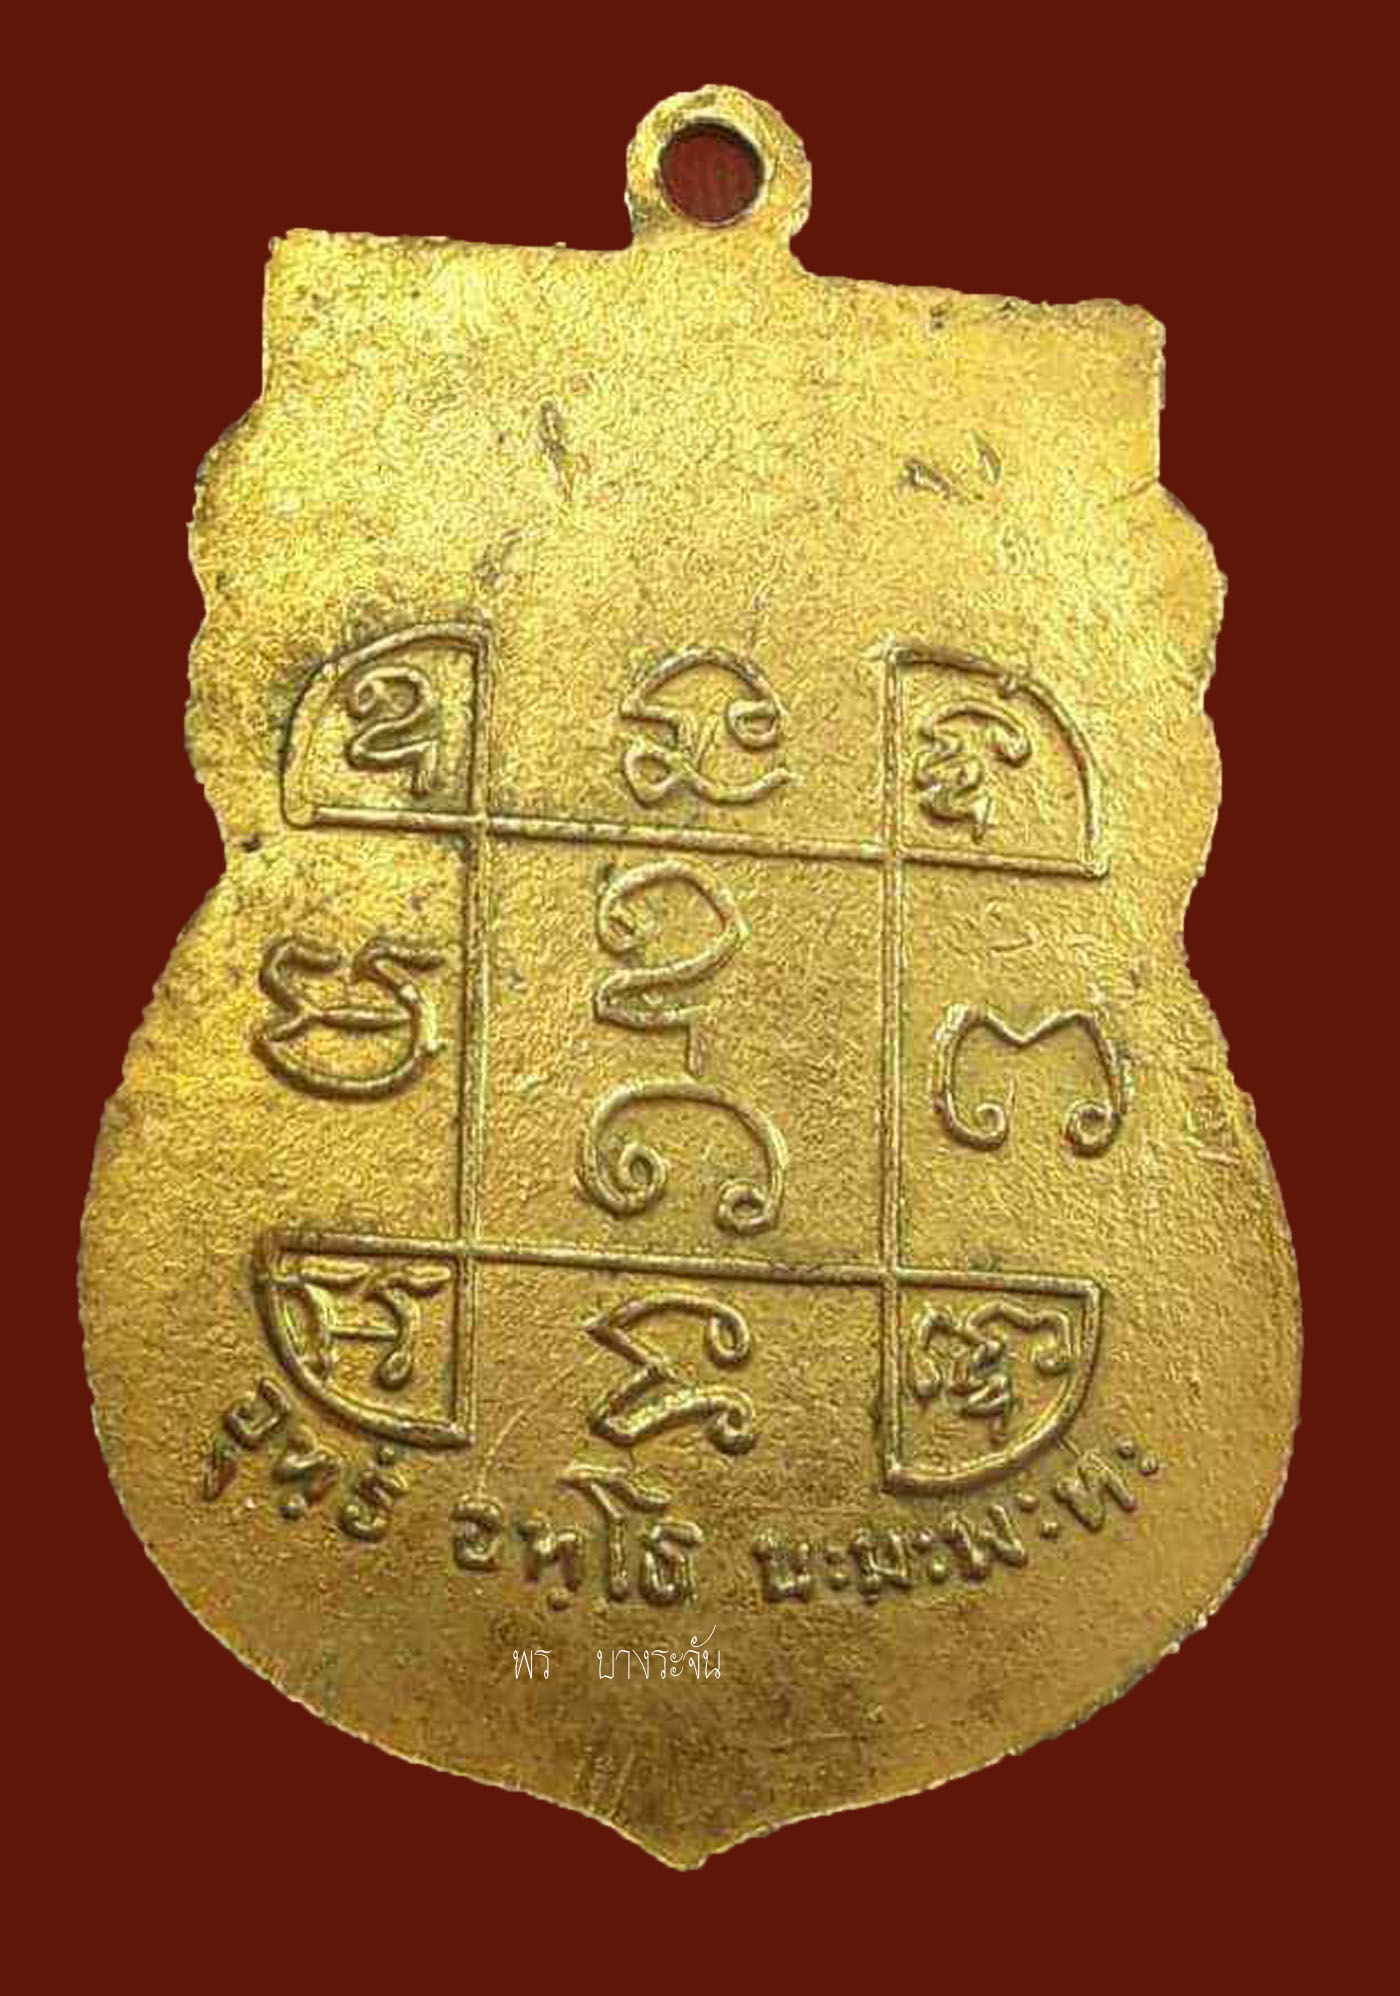 เหรียญหลวงพ่อเปียก ปทุโม วัดนาสร้าง ปี 2500